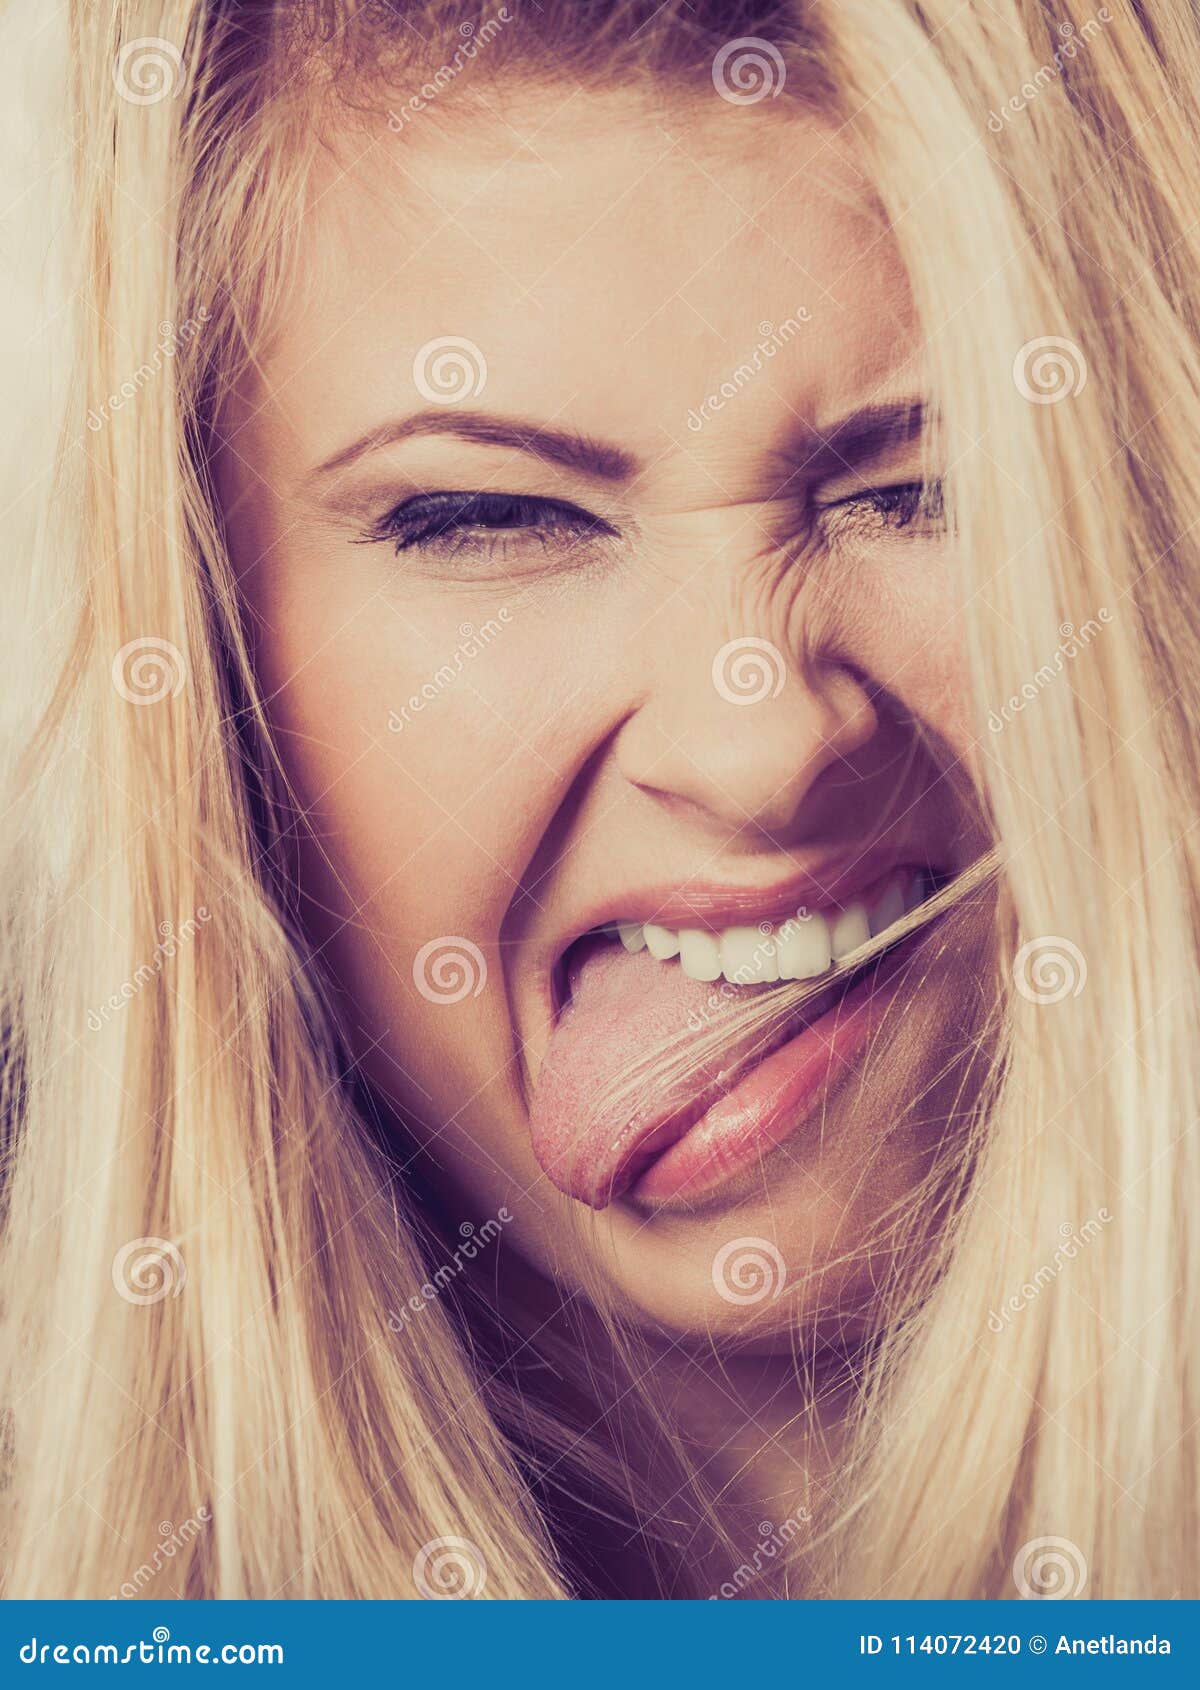 blonde tongue selfie